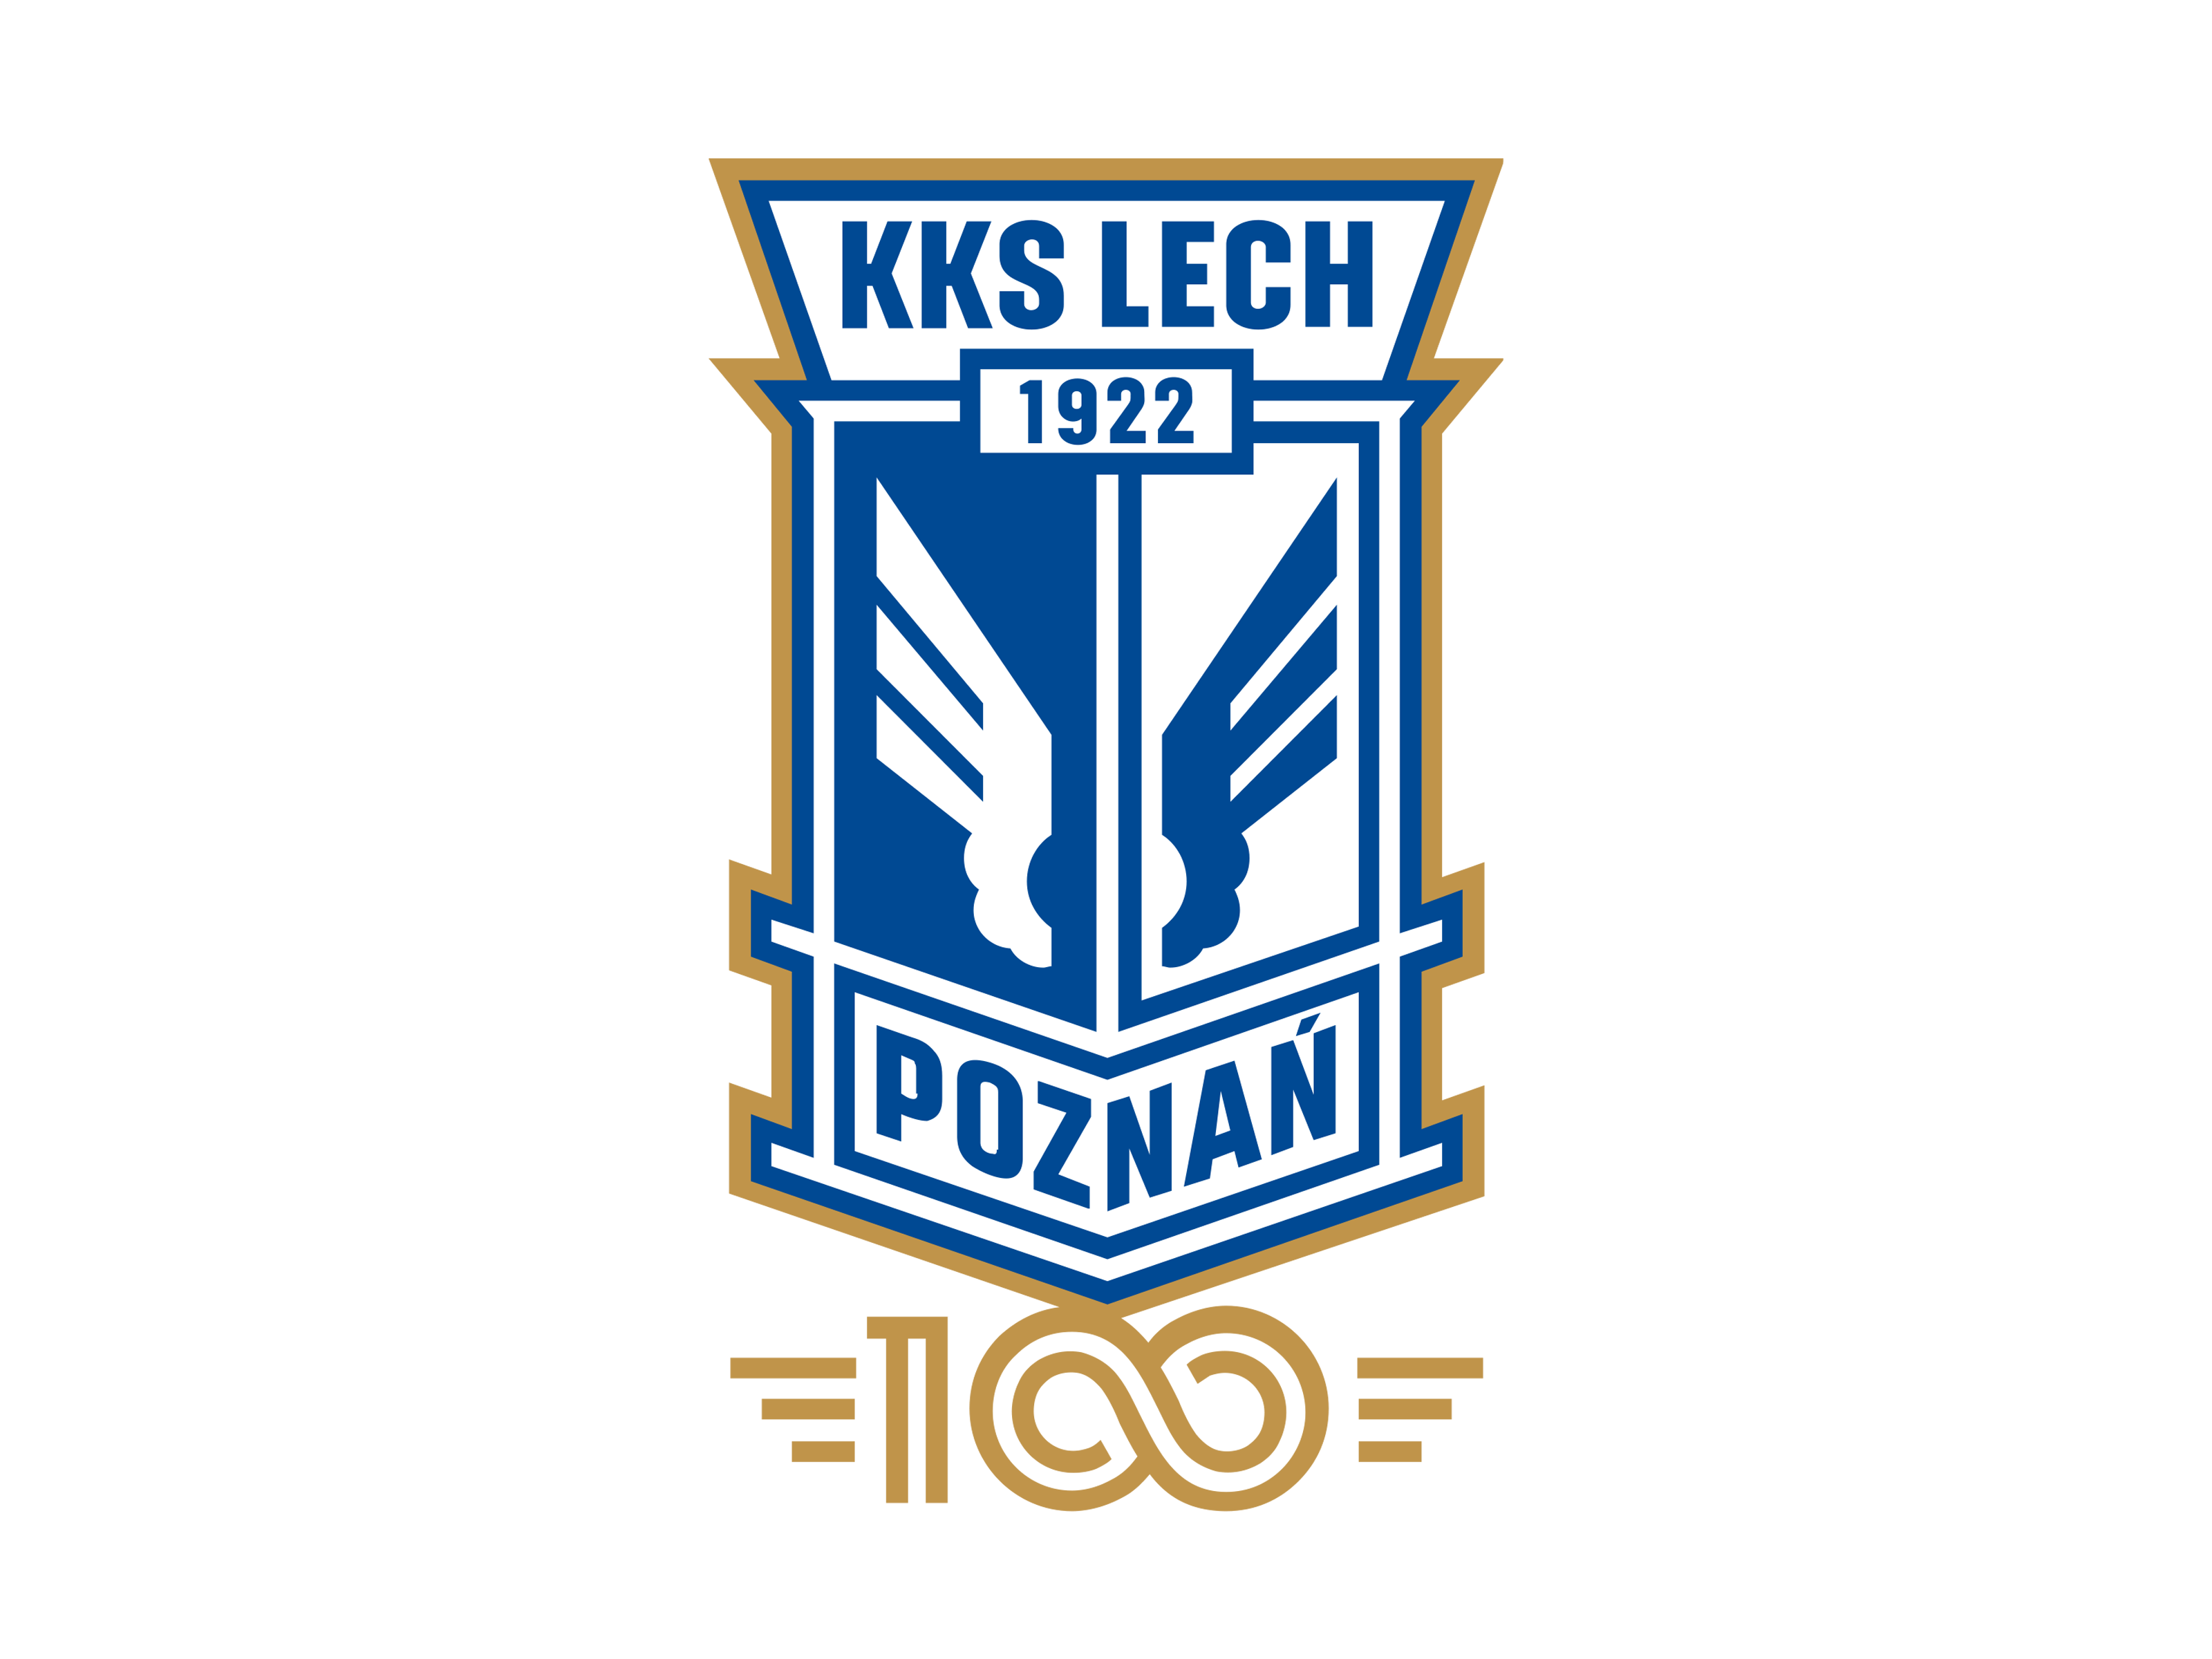 Lech Poznan